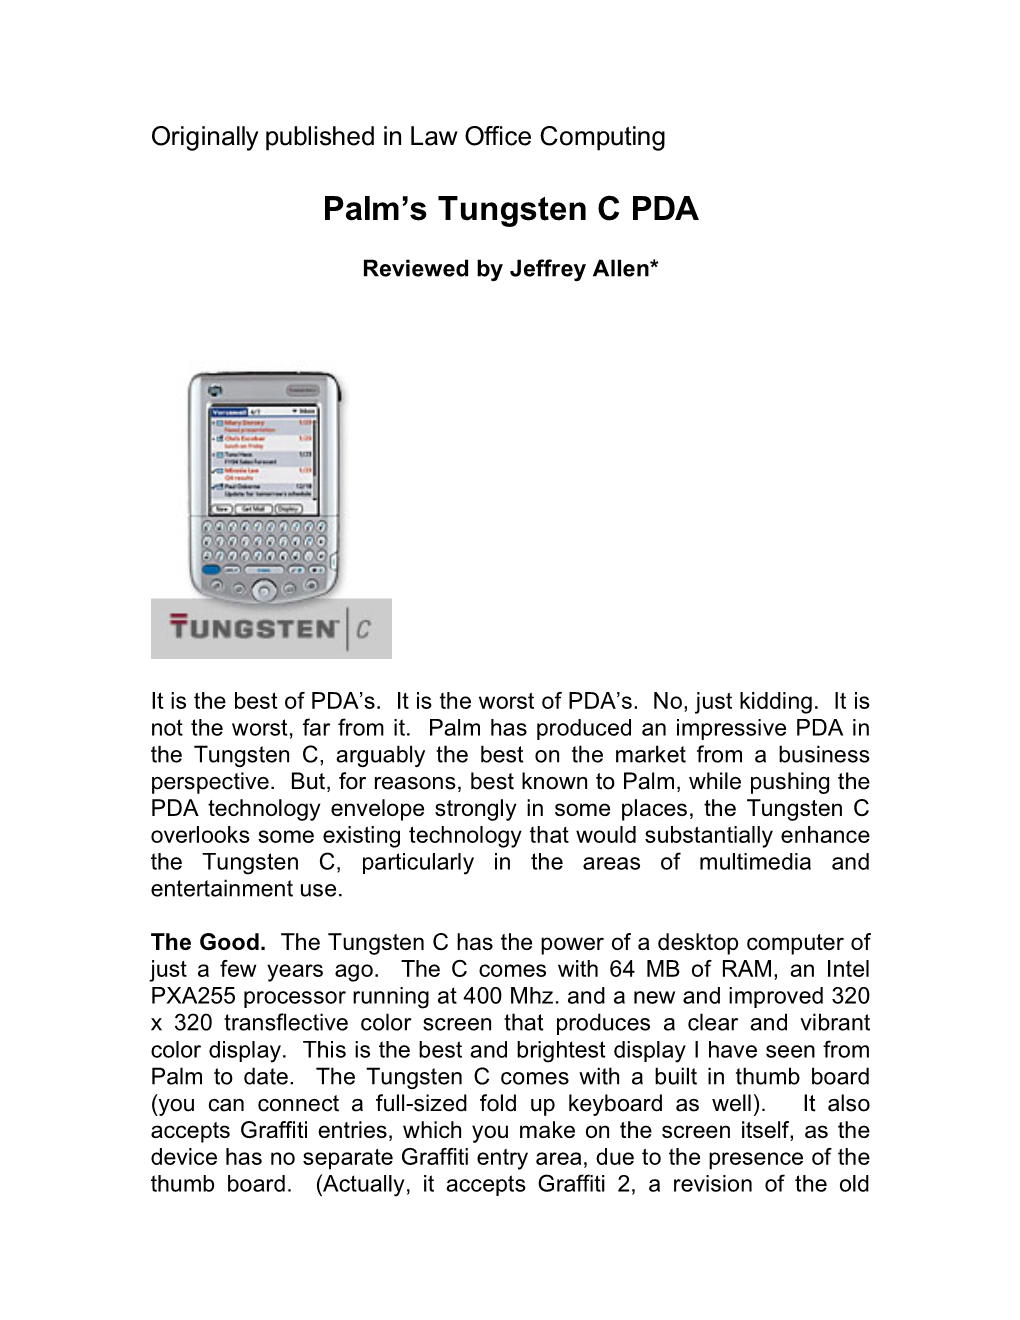 Palm's Tungsten C